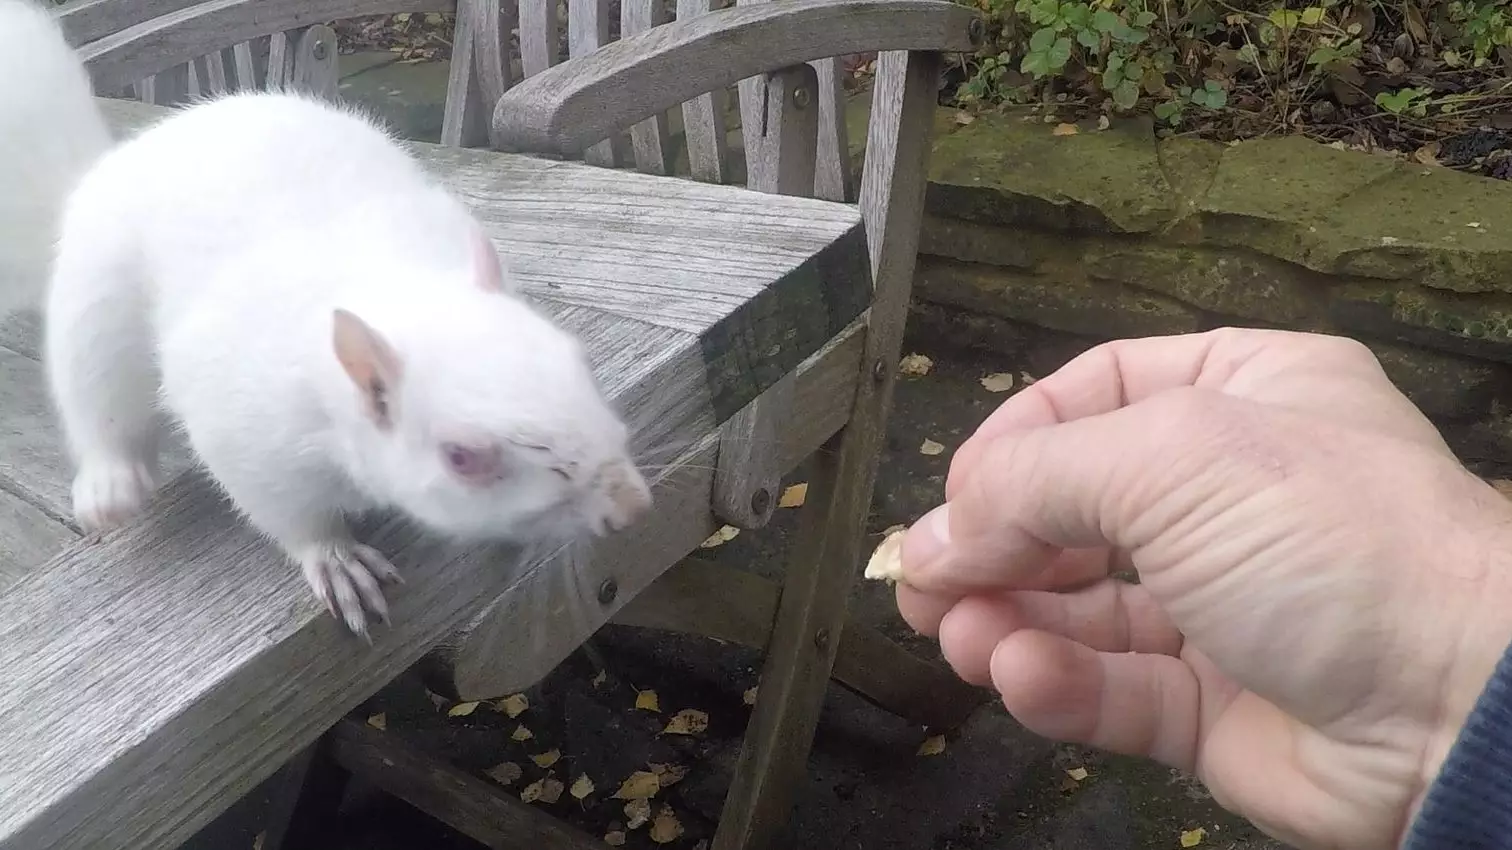 Man Feeds Incredibly Rare Albino Squirrel In His Garden 